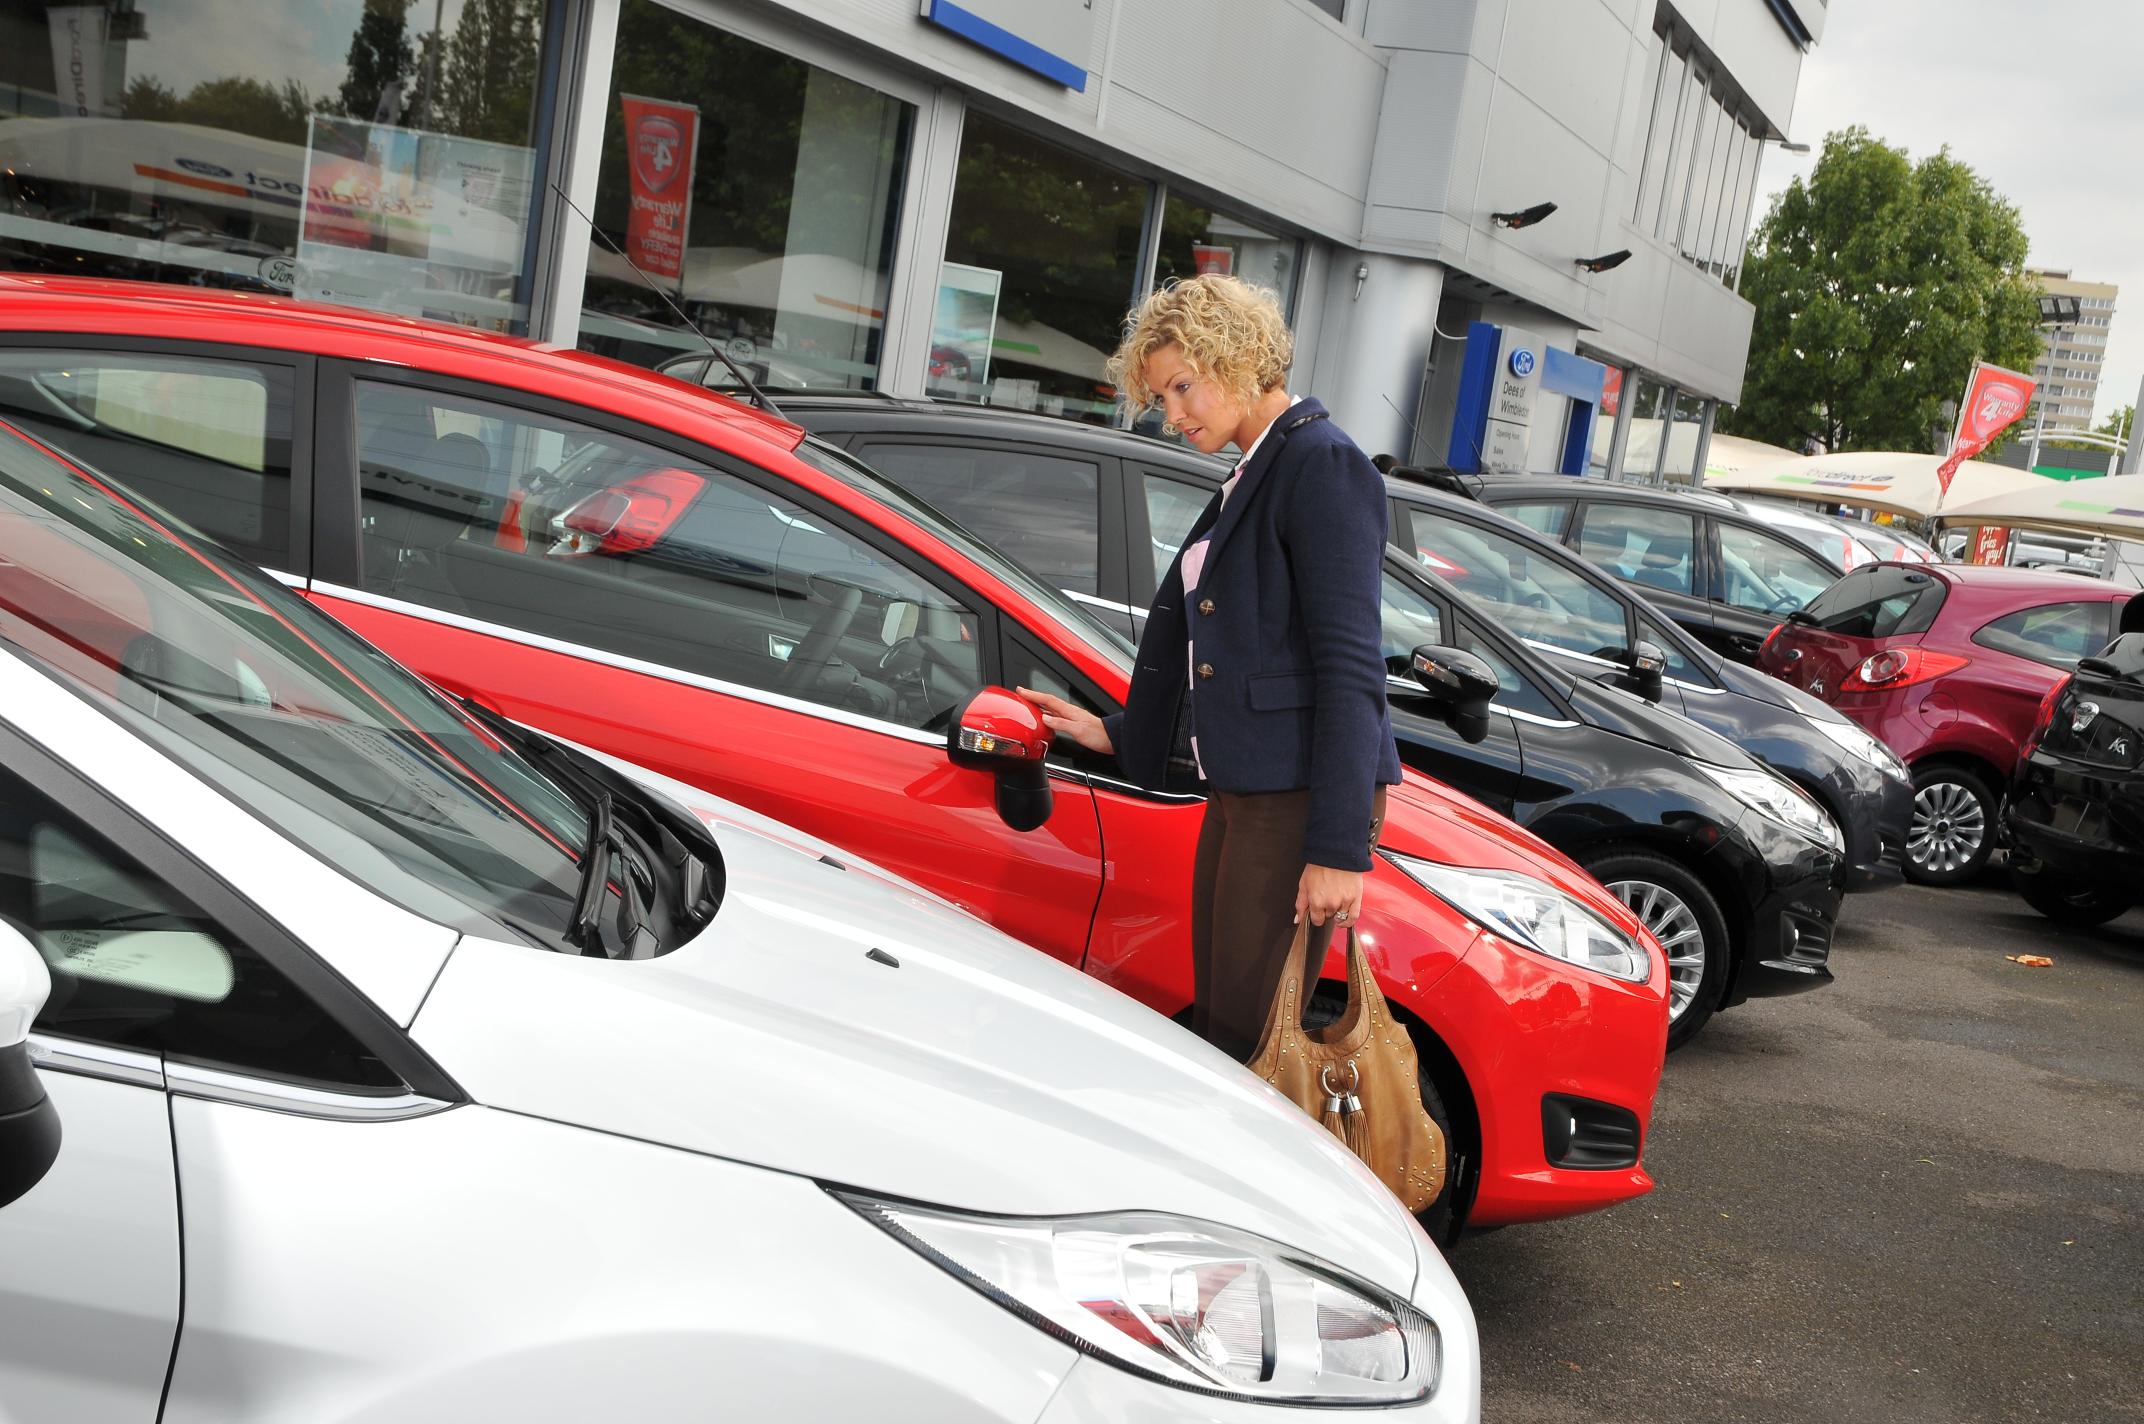 Used car sales drop in Q1 as online platforms drive lockdown demand